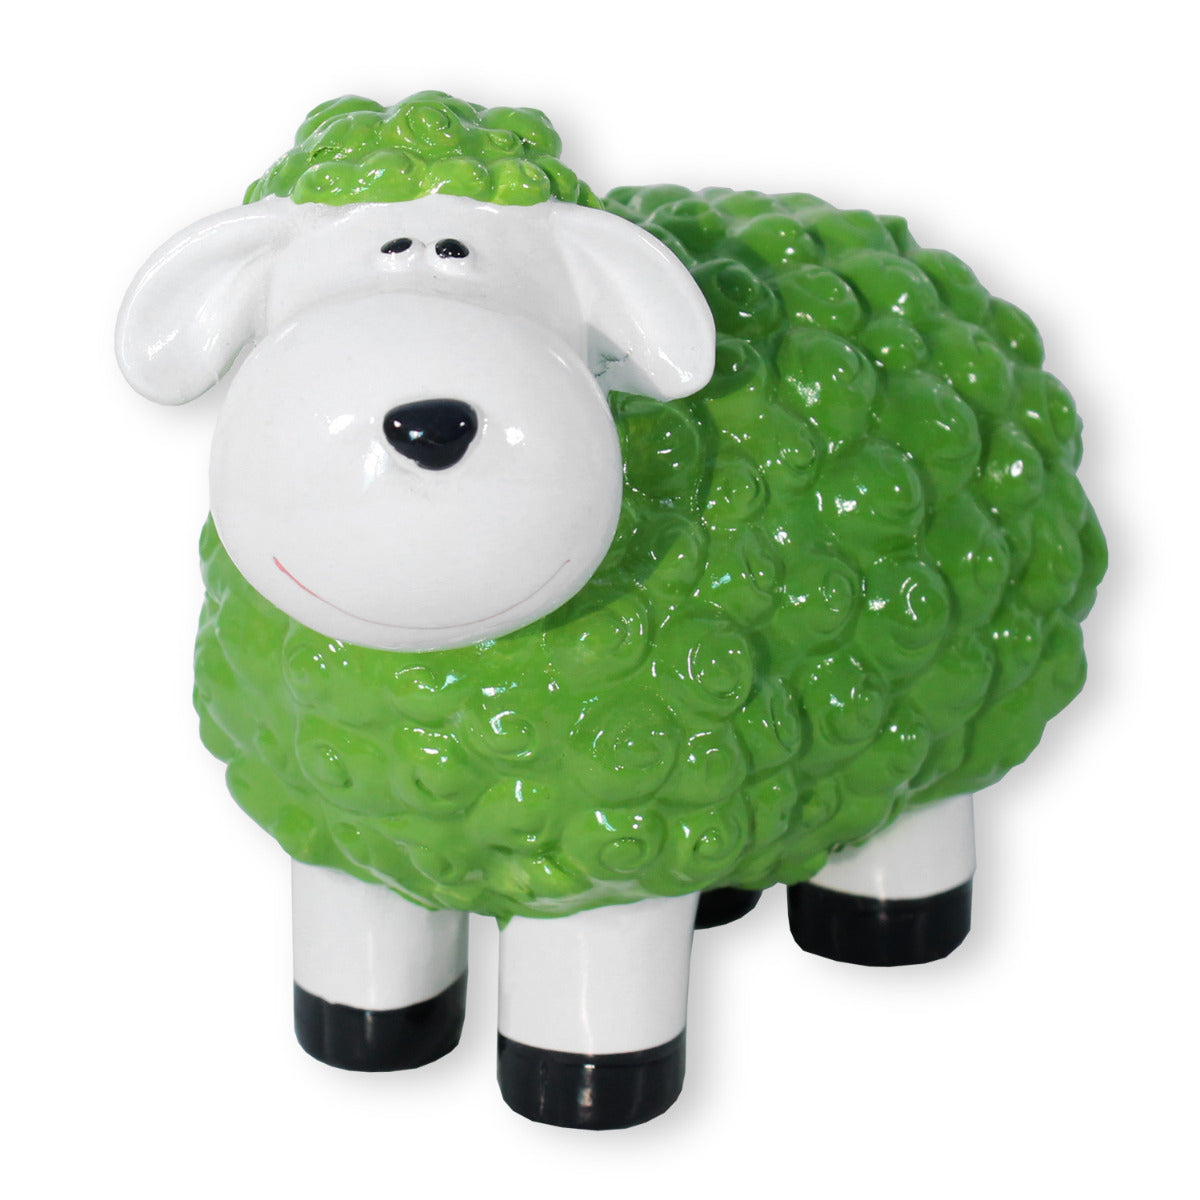 Buntes Deko Schaf grün Gartenfigur Schaf Dekofigur Schaf lustige Schafe